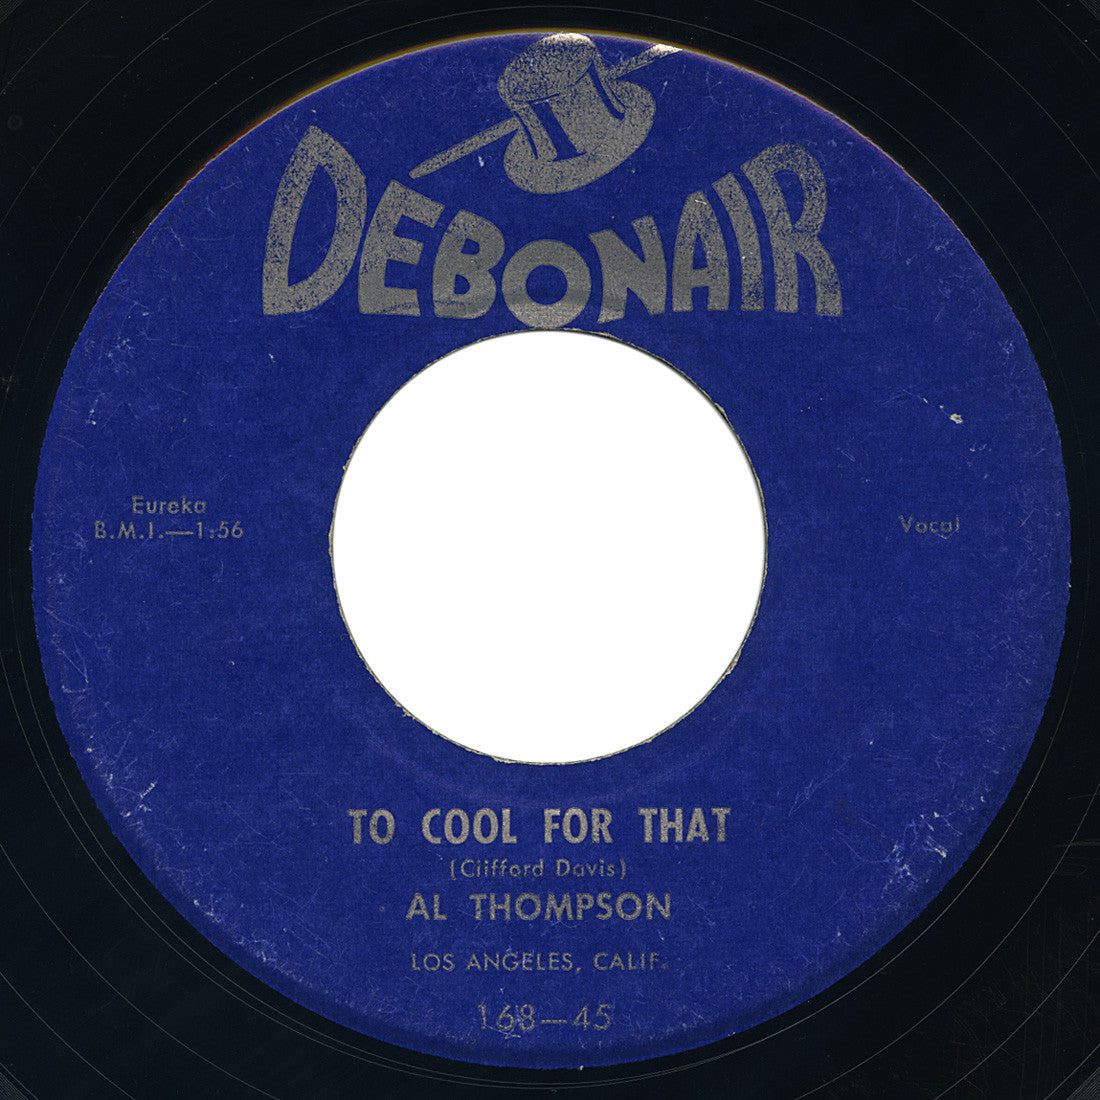 Al Thompson – Too Cool For That – Debonair